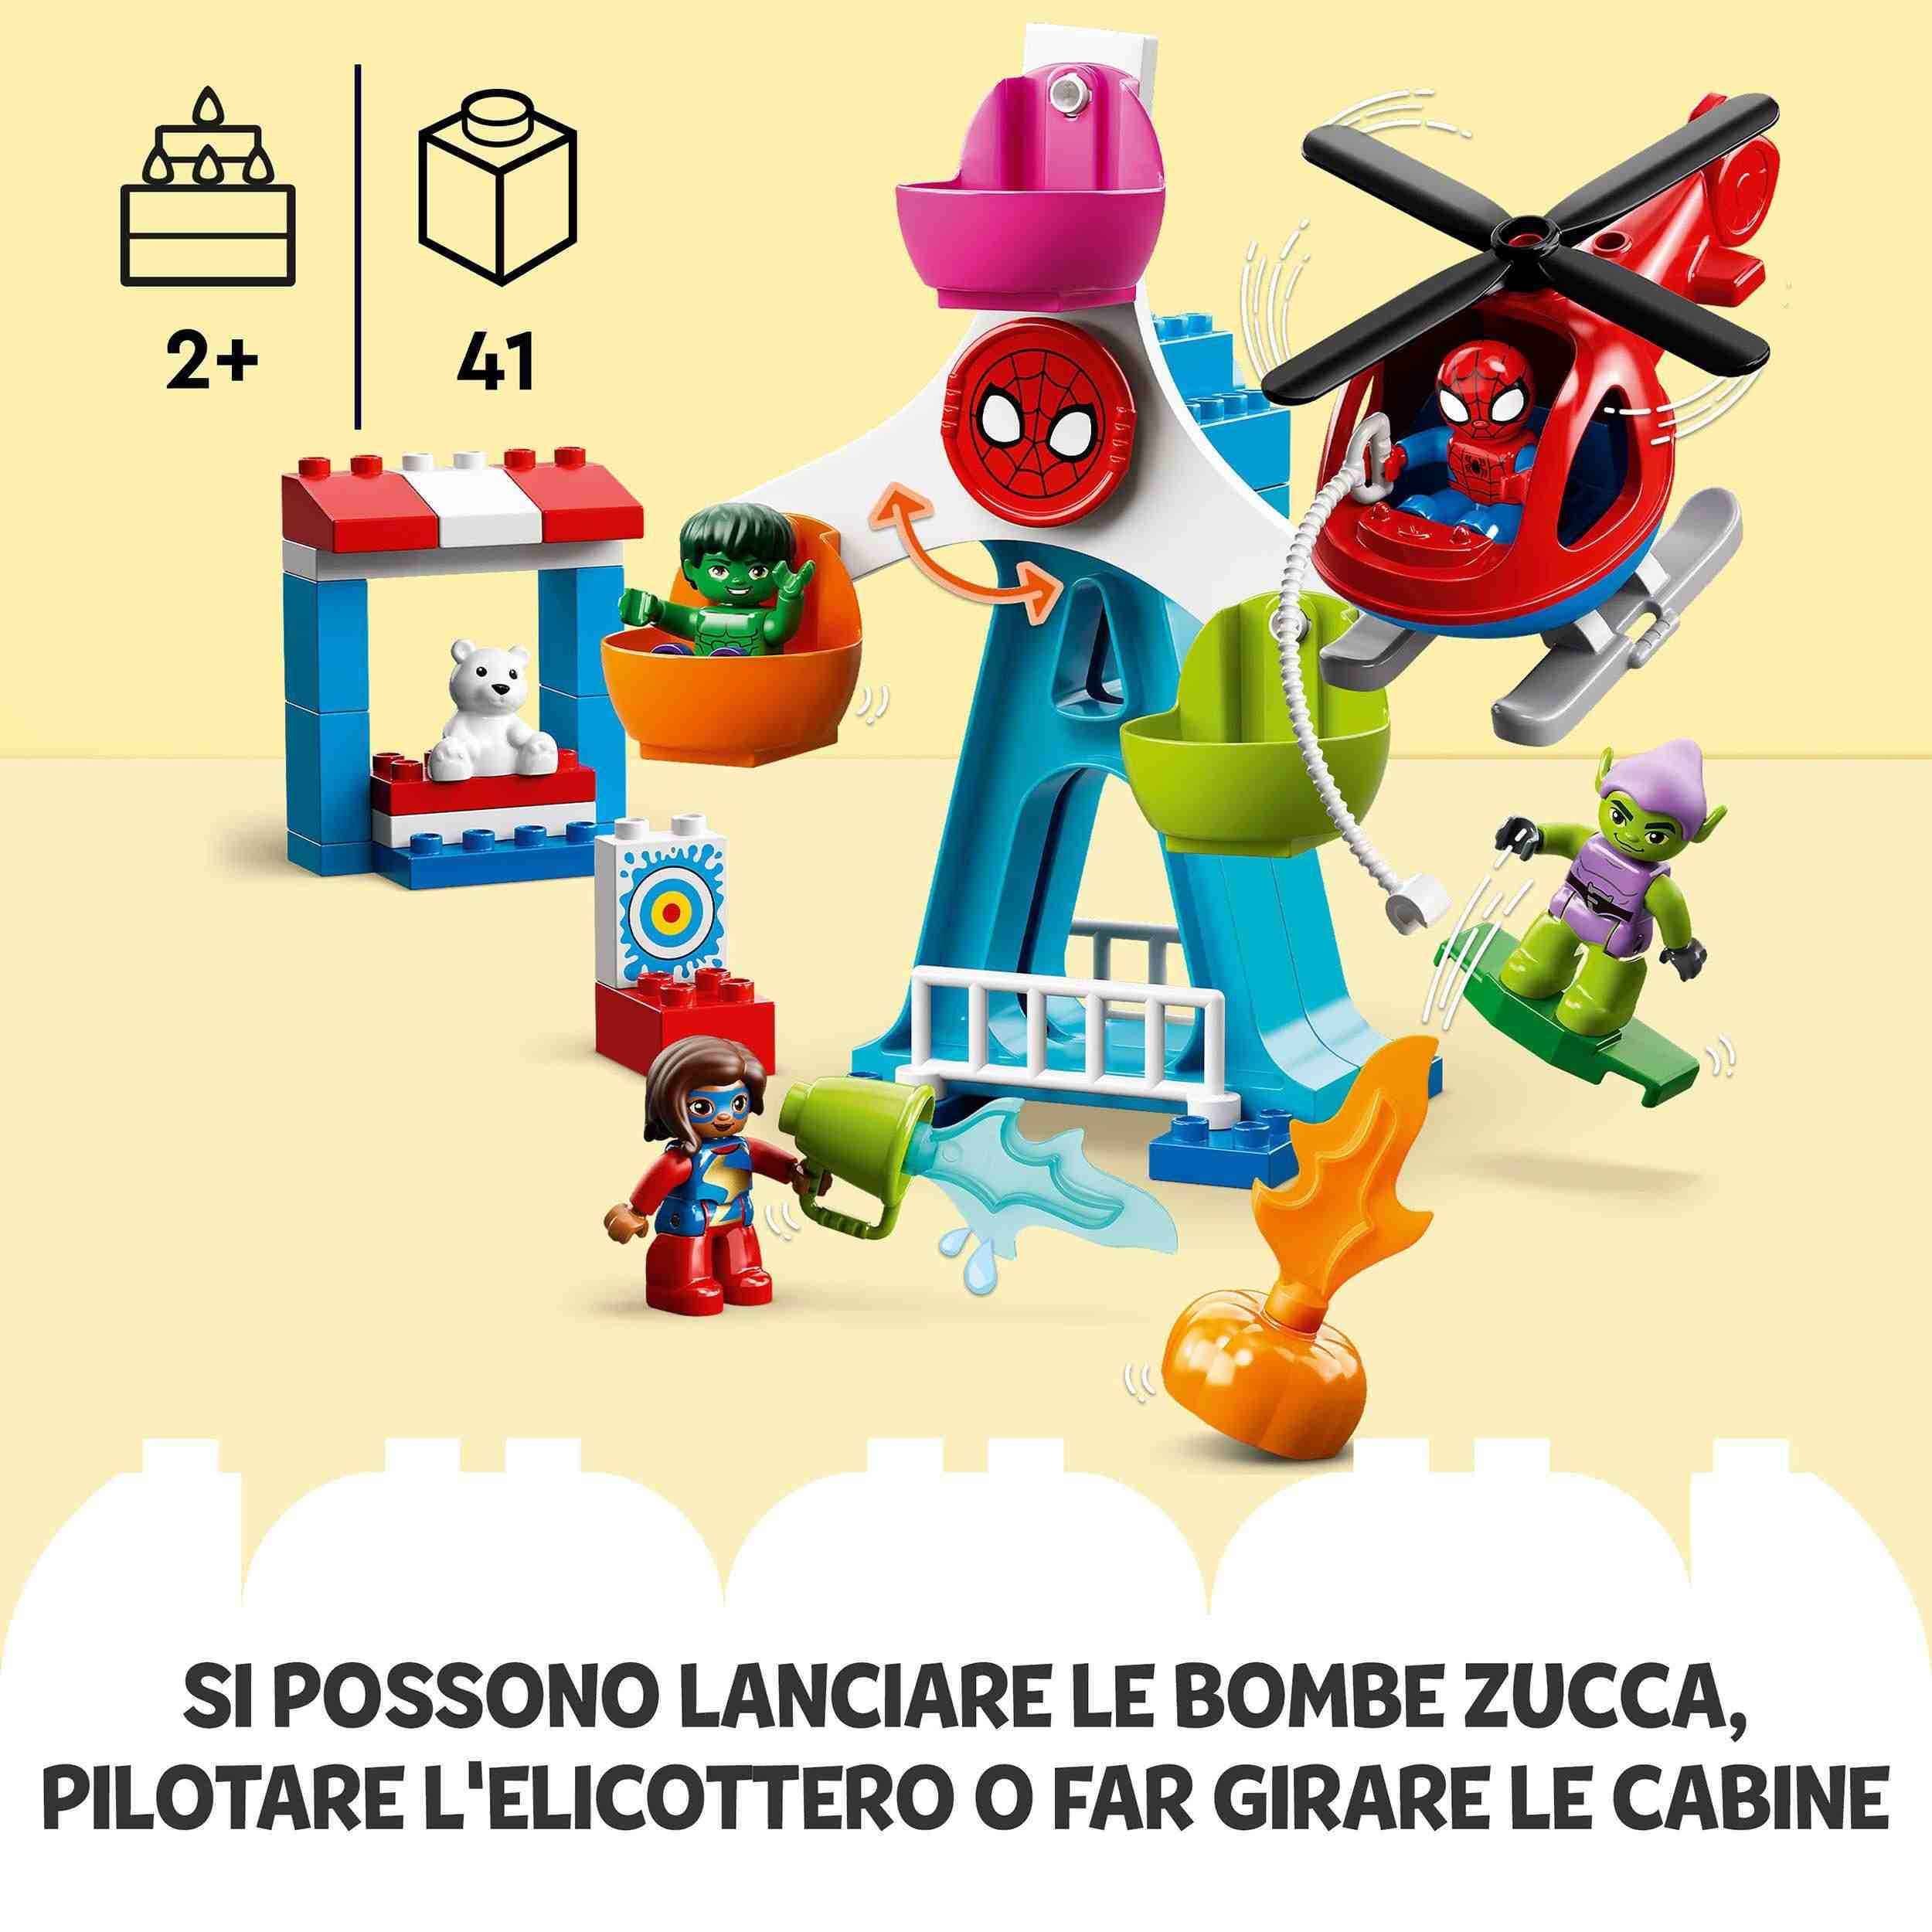 Lego duplo 10963 spider-man e i suoi amici: avventura al luna park, con green goblin e hulk, giochi per bambini dai 2 anni - LEGO DUPLO, LEGO SPIDERMAN, Lego